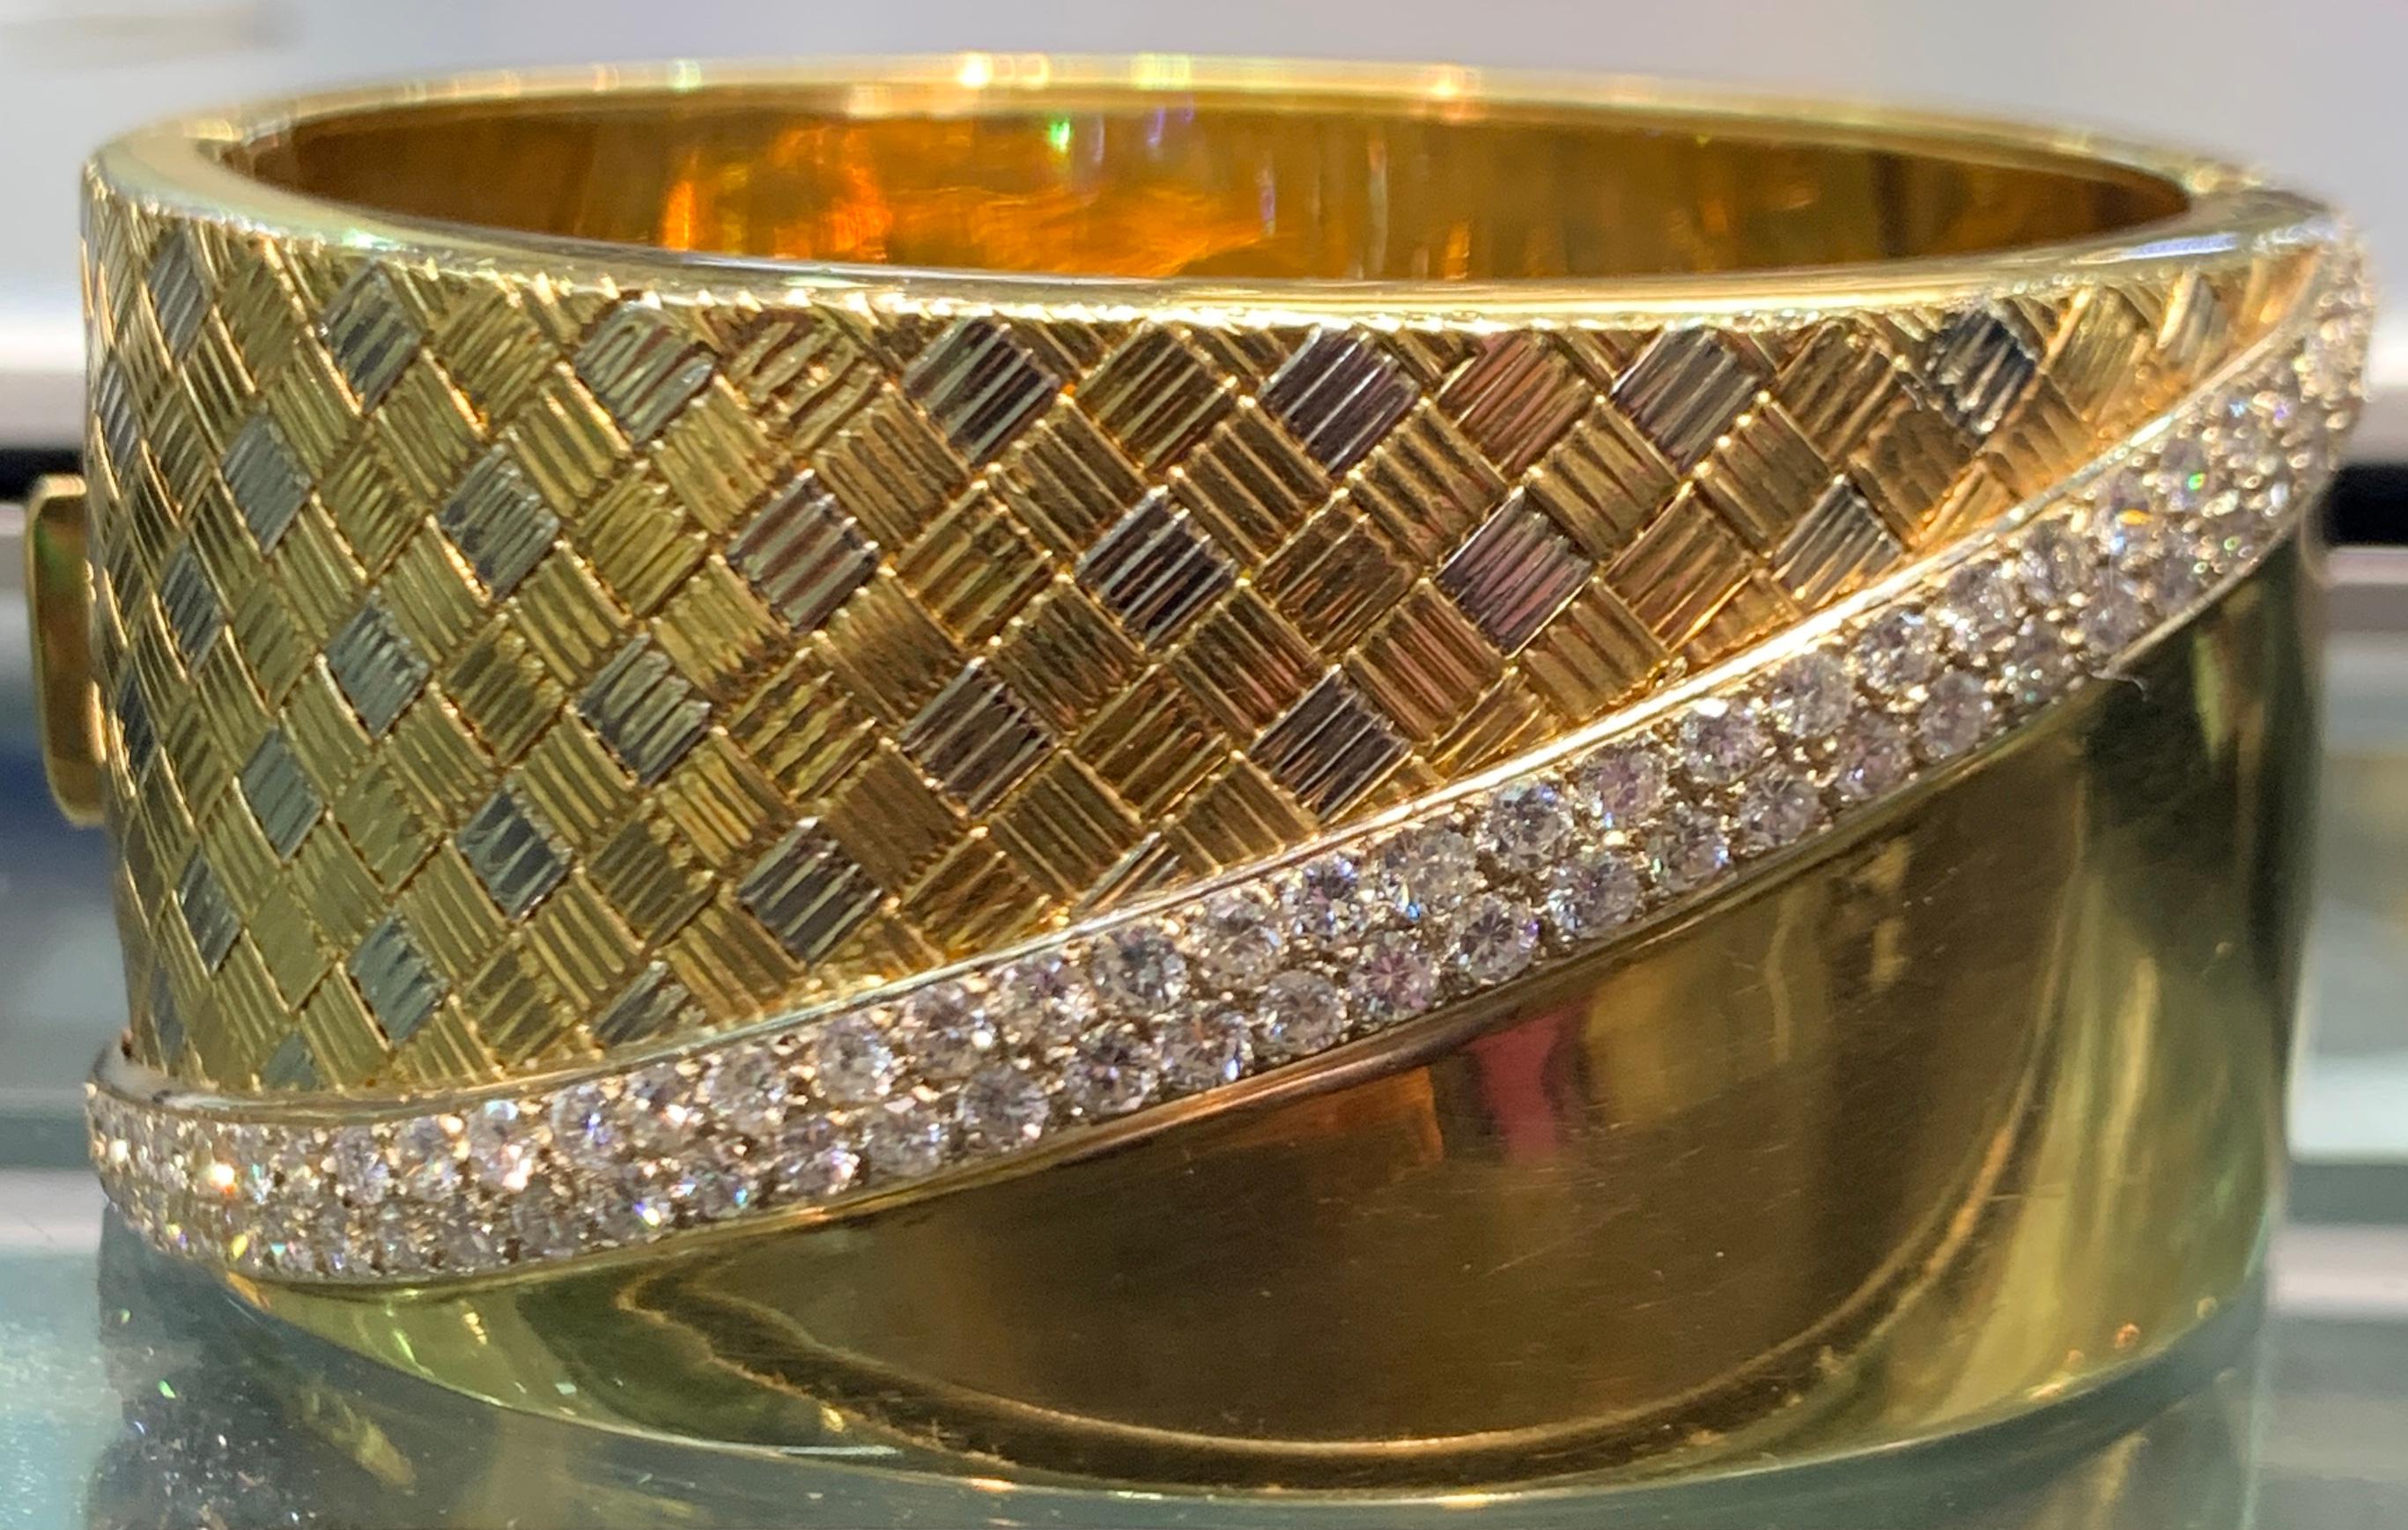 Diamant & Gold Armspange Manschettenarmband
Gold Art:
74 Diamanten insgesamt 
Gewicht des Diamanten: 3,70 Karat
78 Gramm
Maße: Durchmesser: 2,25